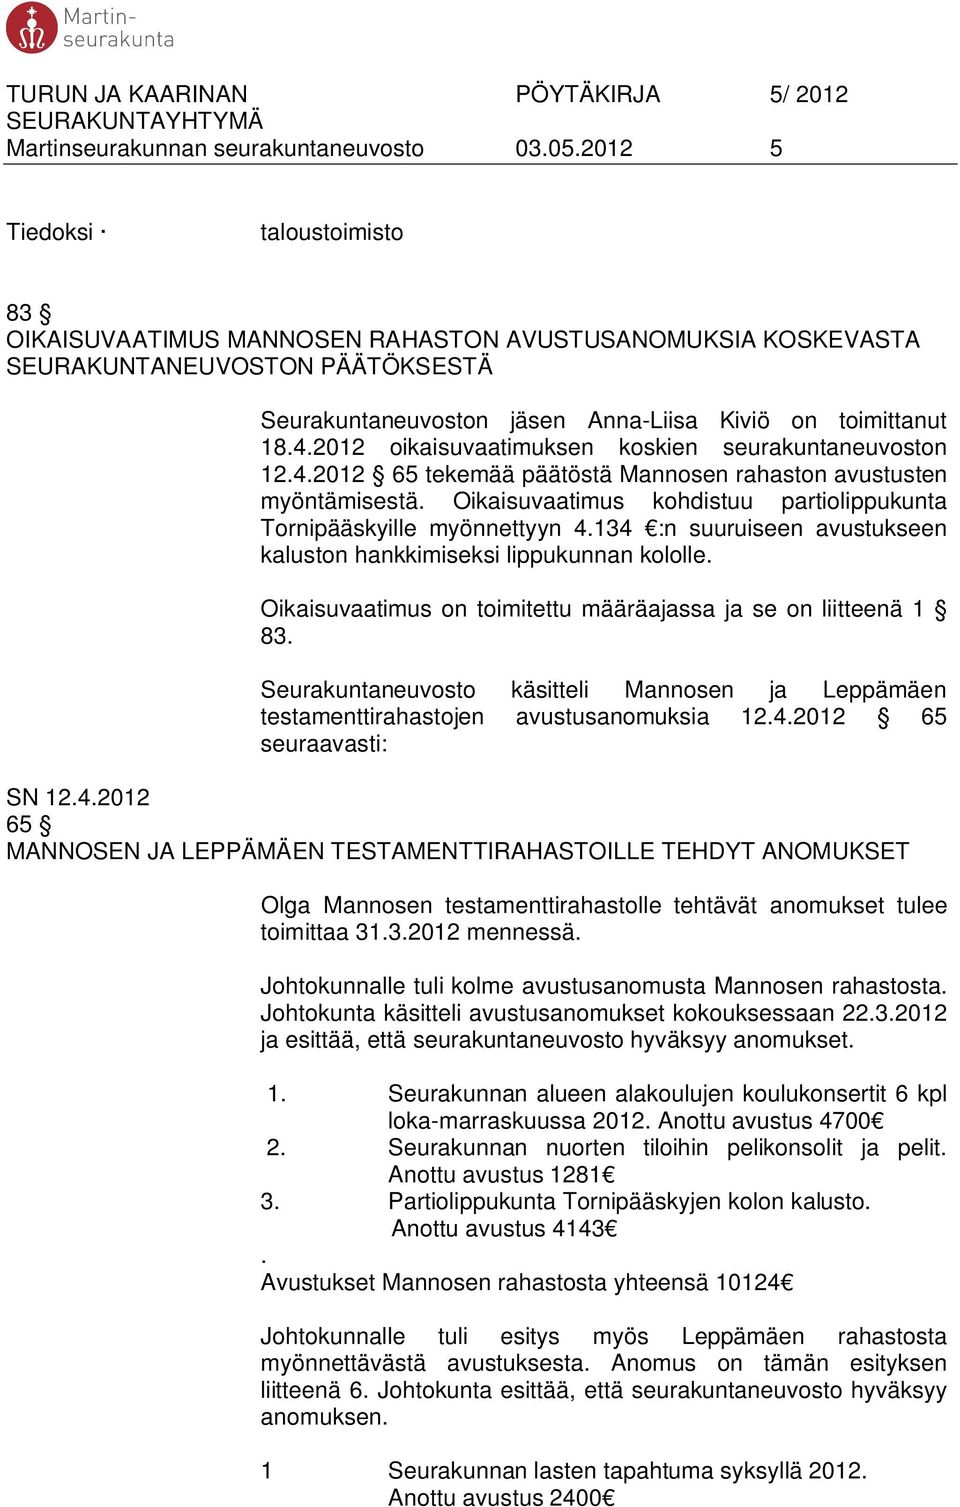 2012 oikaisuvaatimuksen koskien seurakuntaneuvoston 12.4.2012 65 tekemää päätöstä Mannosen rahaston avustusten myöntämisestä. Oikaisuvaatimus kohdistuu partiolippukunta Tornipääskyille myönnettyyn 4.